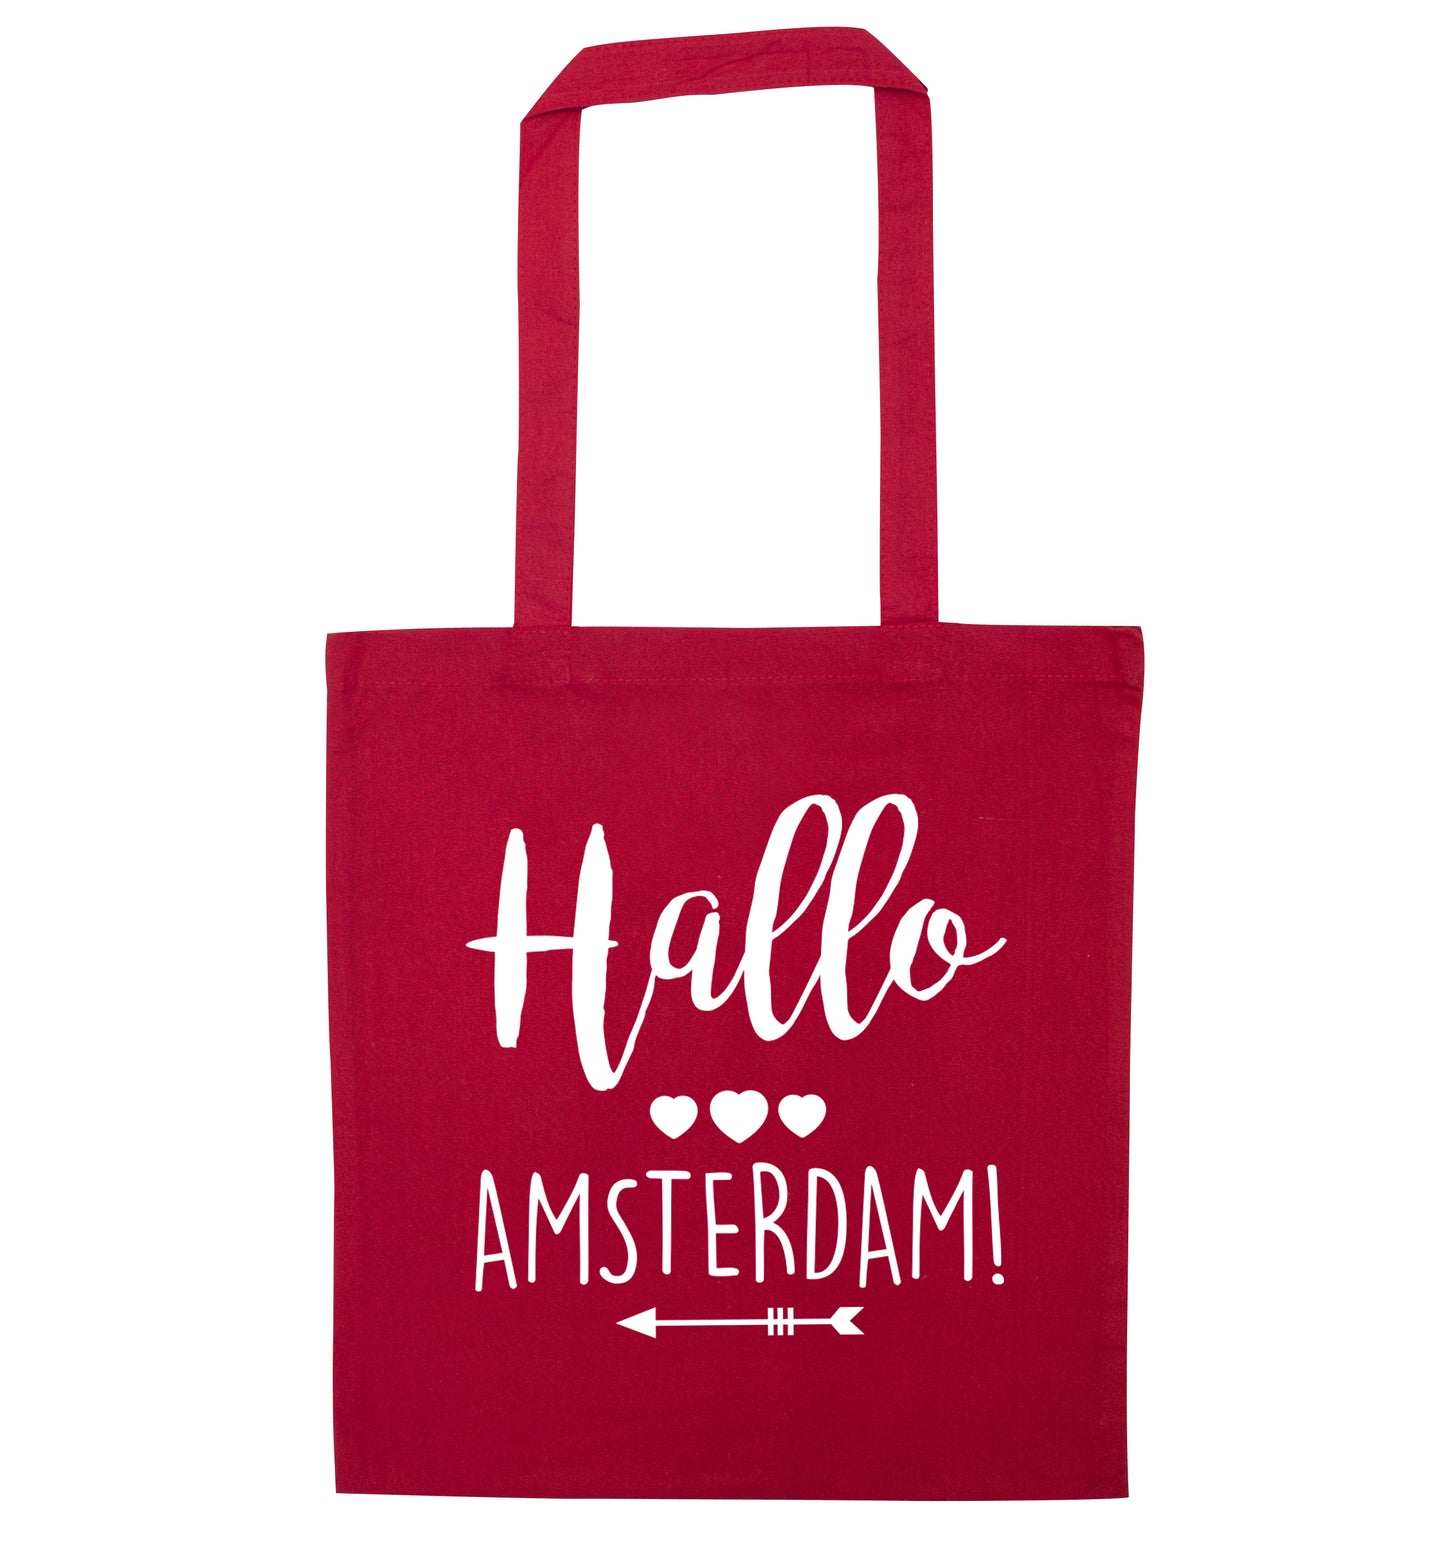 Hallo Amsterdam red tote bag